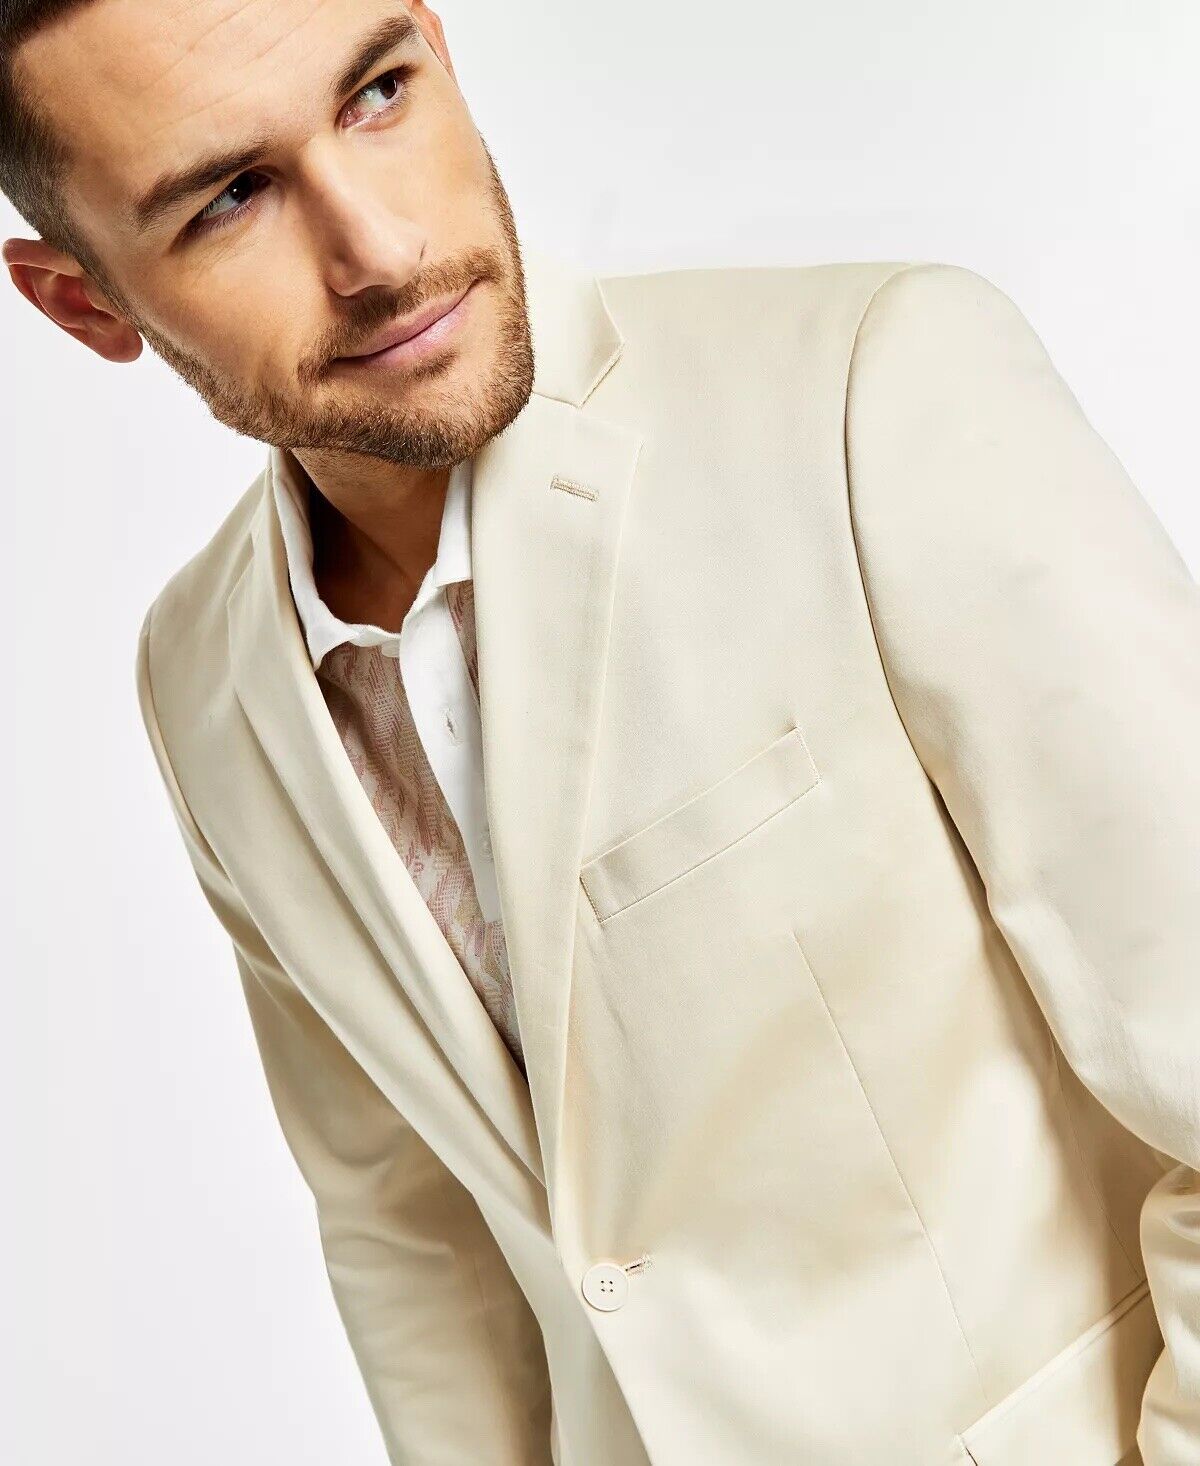 Alfani Men's Slim-Fit Solid Cream Cotton Suit Jacket Cream 44S